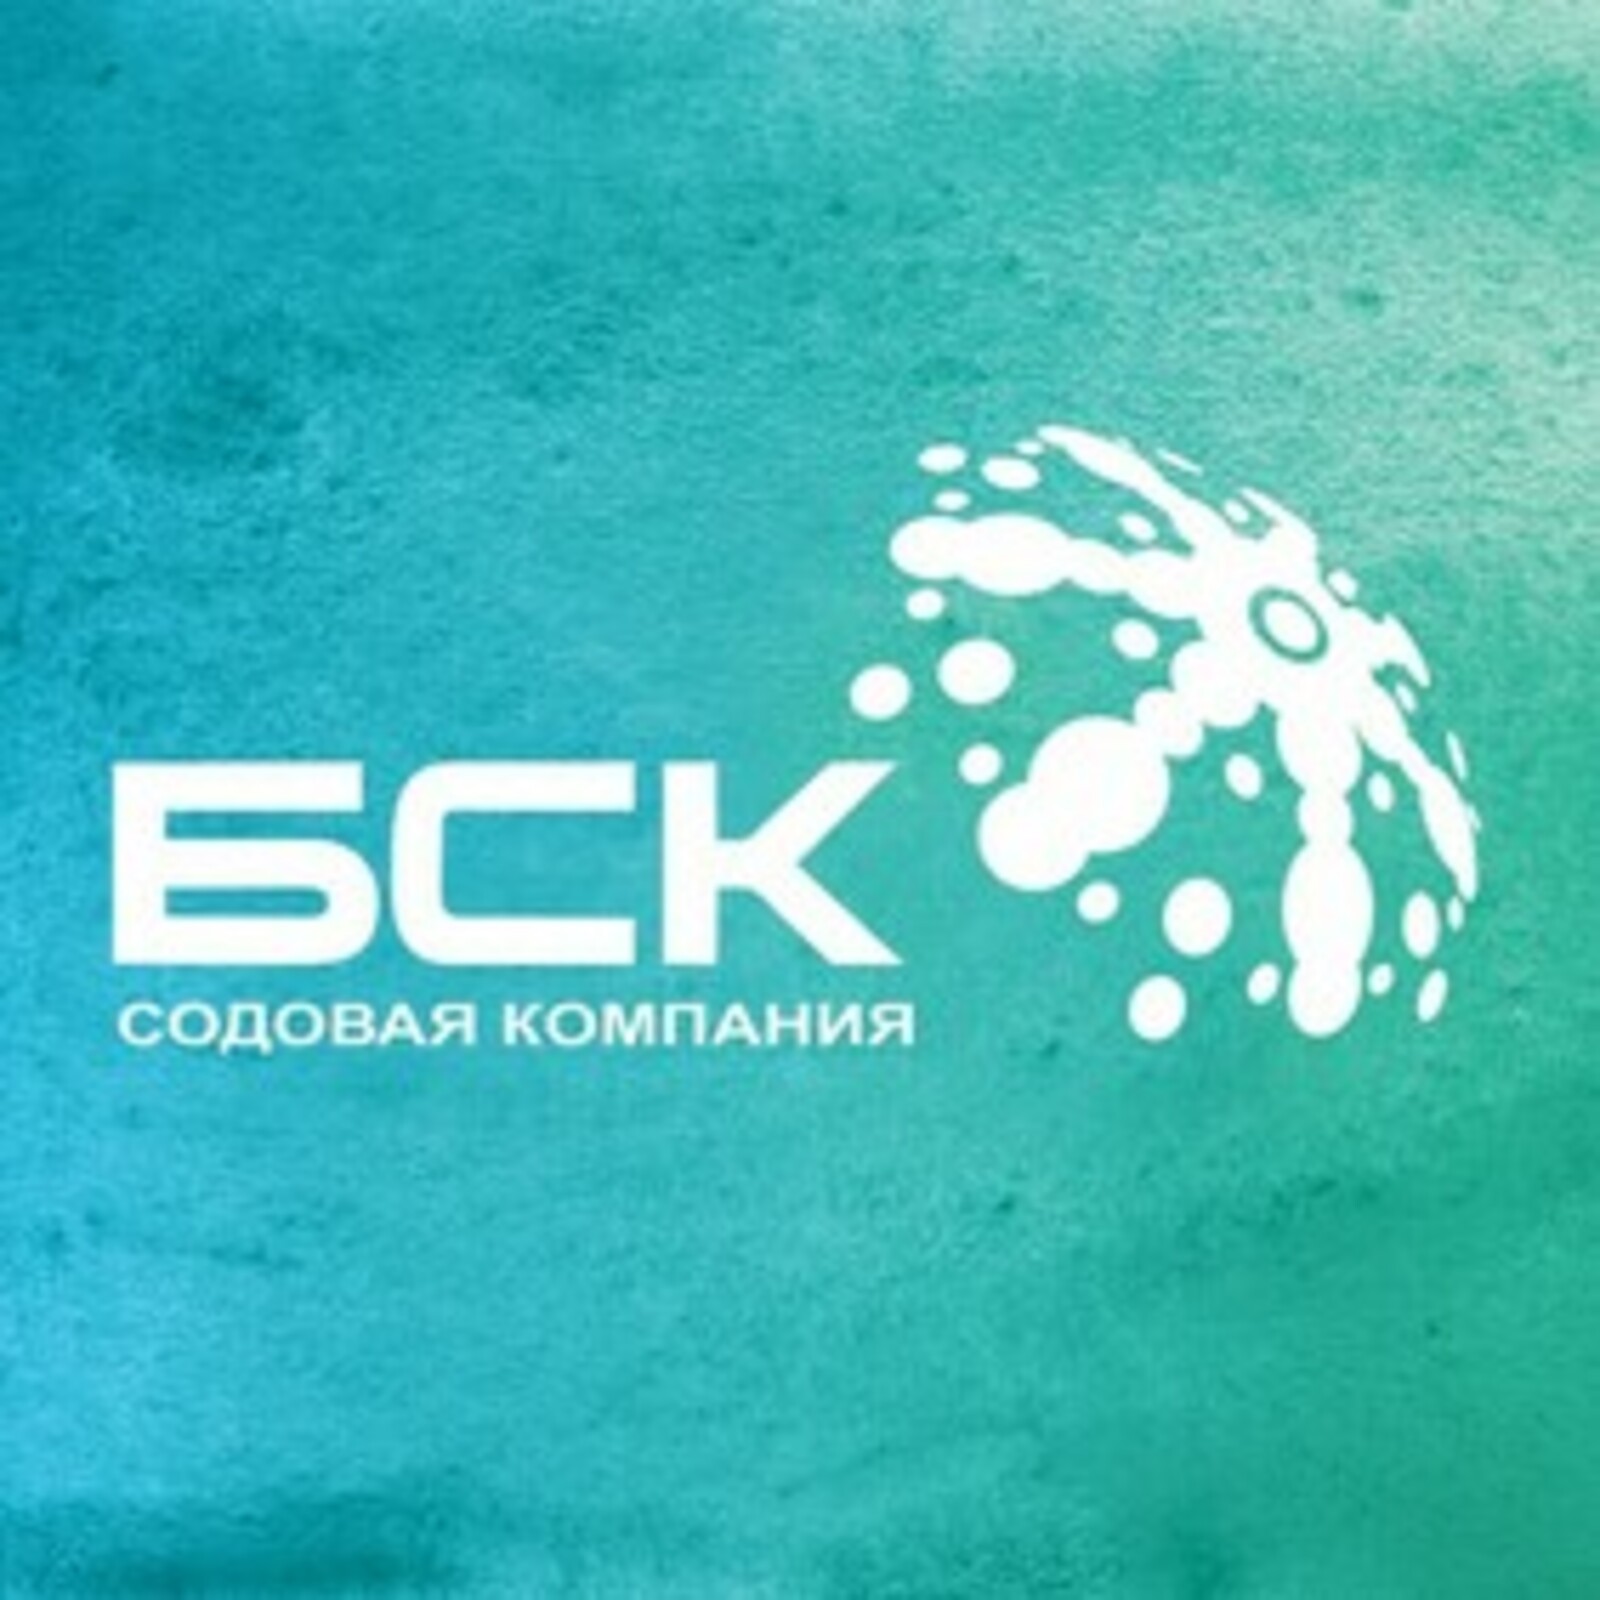 БСК приступила к реализации проекта по созданию химического кластера в Казахстане